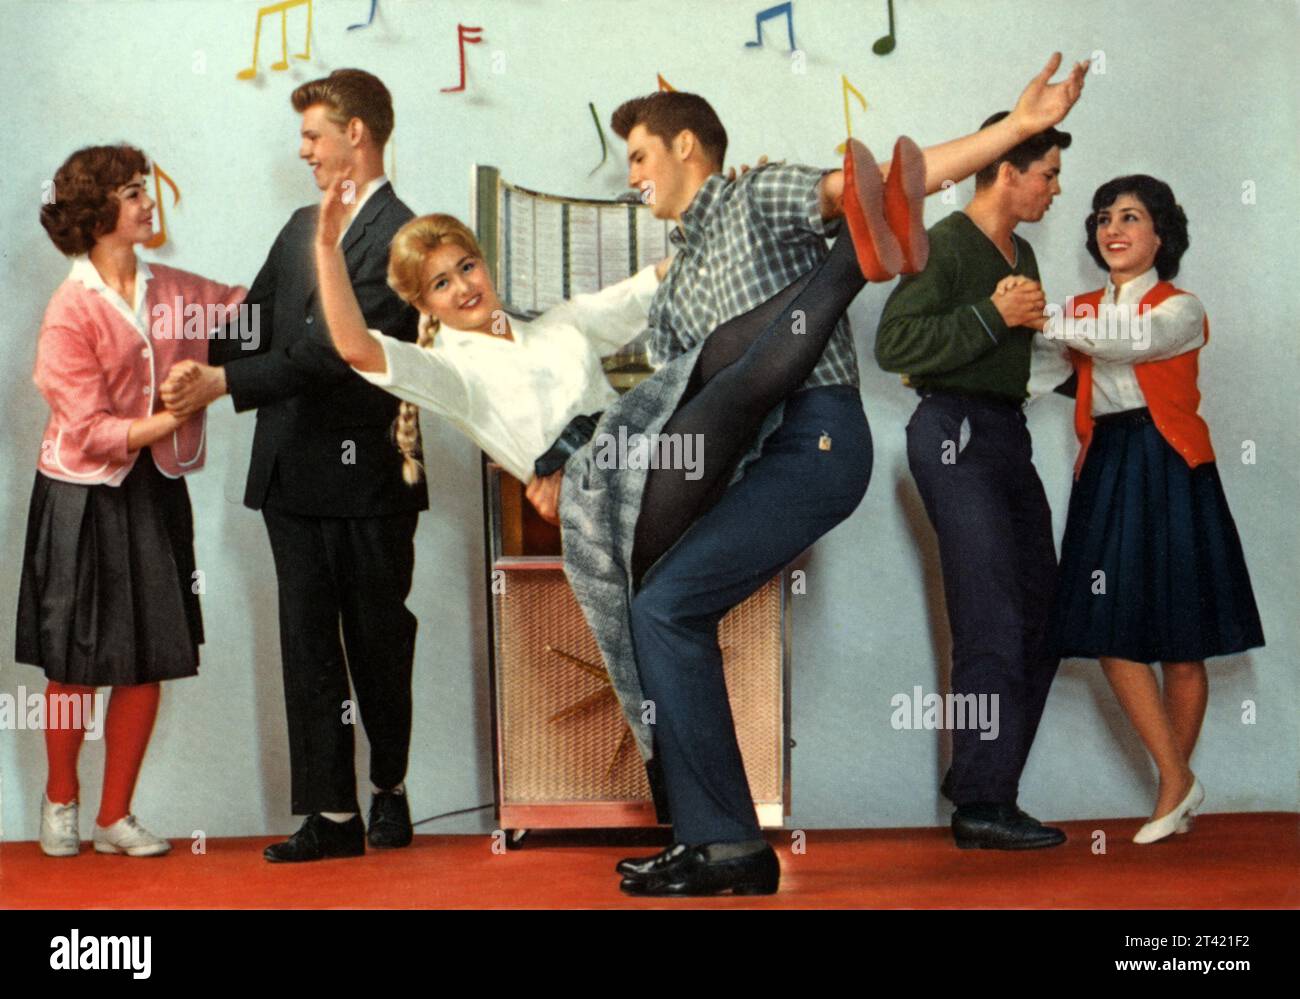 1958 CA, GERMANIA OVEST: Cartolina tedesca nel vero gusto degli ANNI FITIES , con ADOLESCENTI vestiti con gusto moderno di ROCK'N ROLL HAPPY DAYS AGE , ballano acrobatici intorno ad un juke box . Fotografo sconosciuto . - STORIA - FOTO STORICHE - ADOLESCENTI - MODA AMERICANA - MODA AMERICANA - ANNI CINQANTA - ANNI '50 - '50 - '1950 - DESIGN - POP - JUKE-BOX - DONNA - DONNA - RAGAZZE - RAGAZZI - RAGAZZE - RAGAZZI - RAGAZZE - RAGAZZE - DONNE - PANTALONE - STILE - STILE - BLOND - SUMMER JAMBOREE - MUSICA - MUSICA - MODERNO - ROCK'A BILLY - BALLO - BALLO - BALLO - BALLO - BALLO - BALLO - FESTA - ALLE Foto Stock